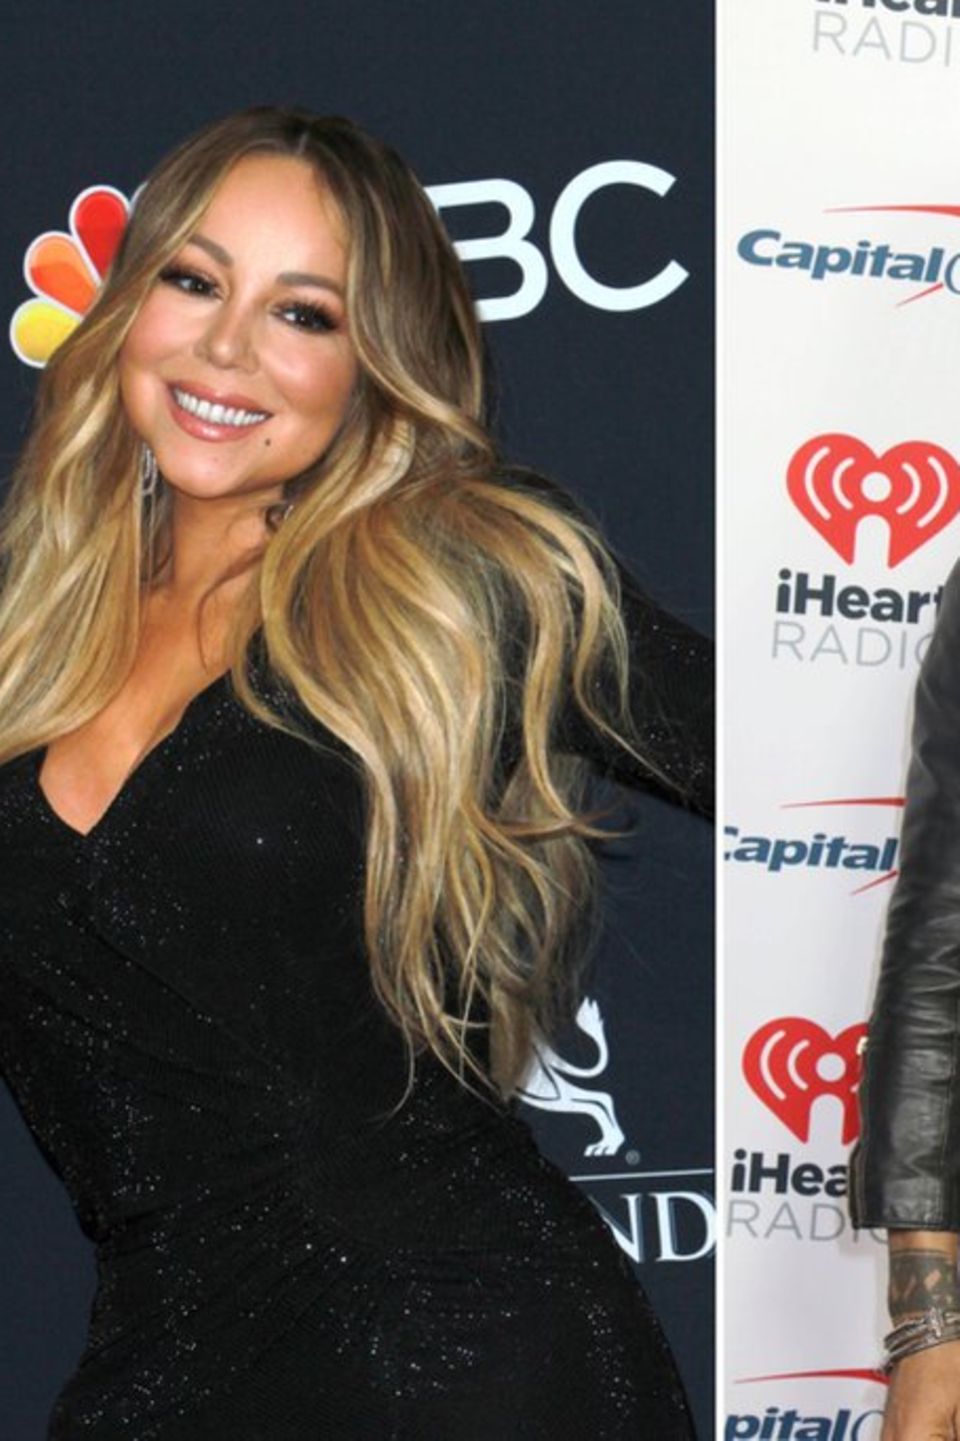 Mariah Carey und Lenny Kravitz kannten sich schon lange, bevor sie berühmt wurden.